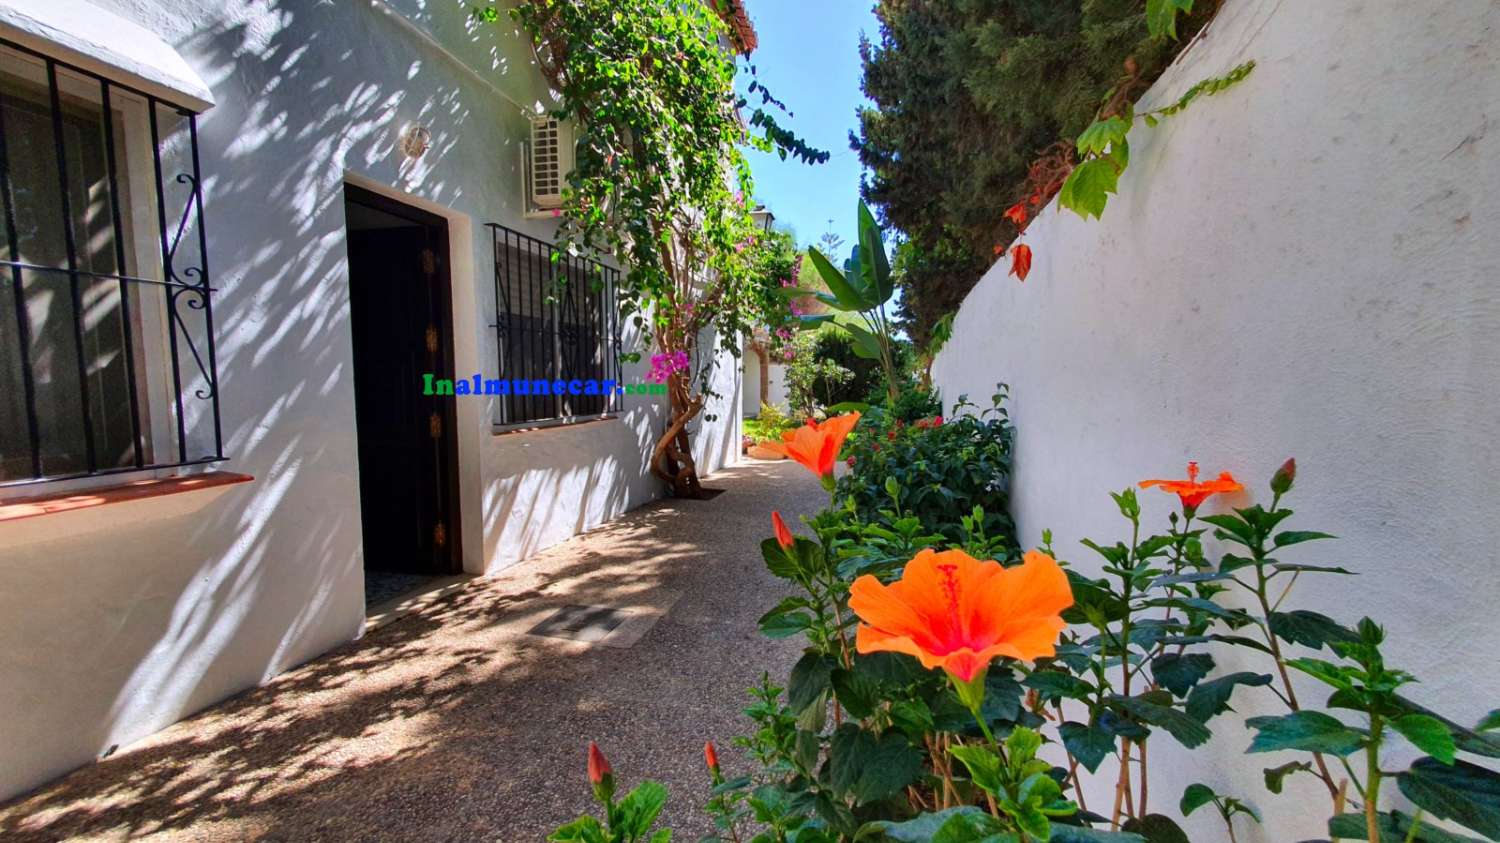 Villa till salu i Almuñécar med underbar havsutsikt, trädgård och garage – nära stranden och restauranger